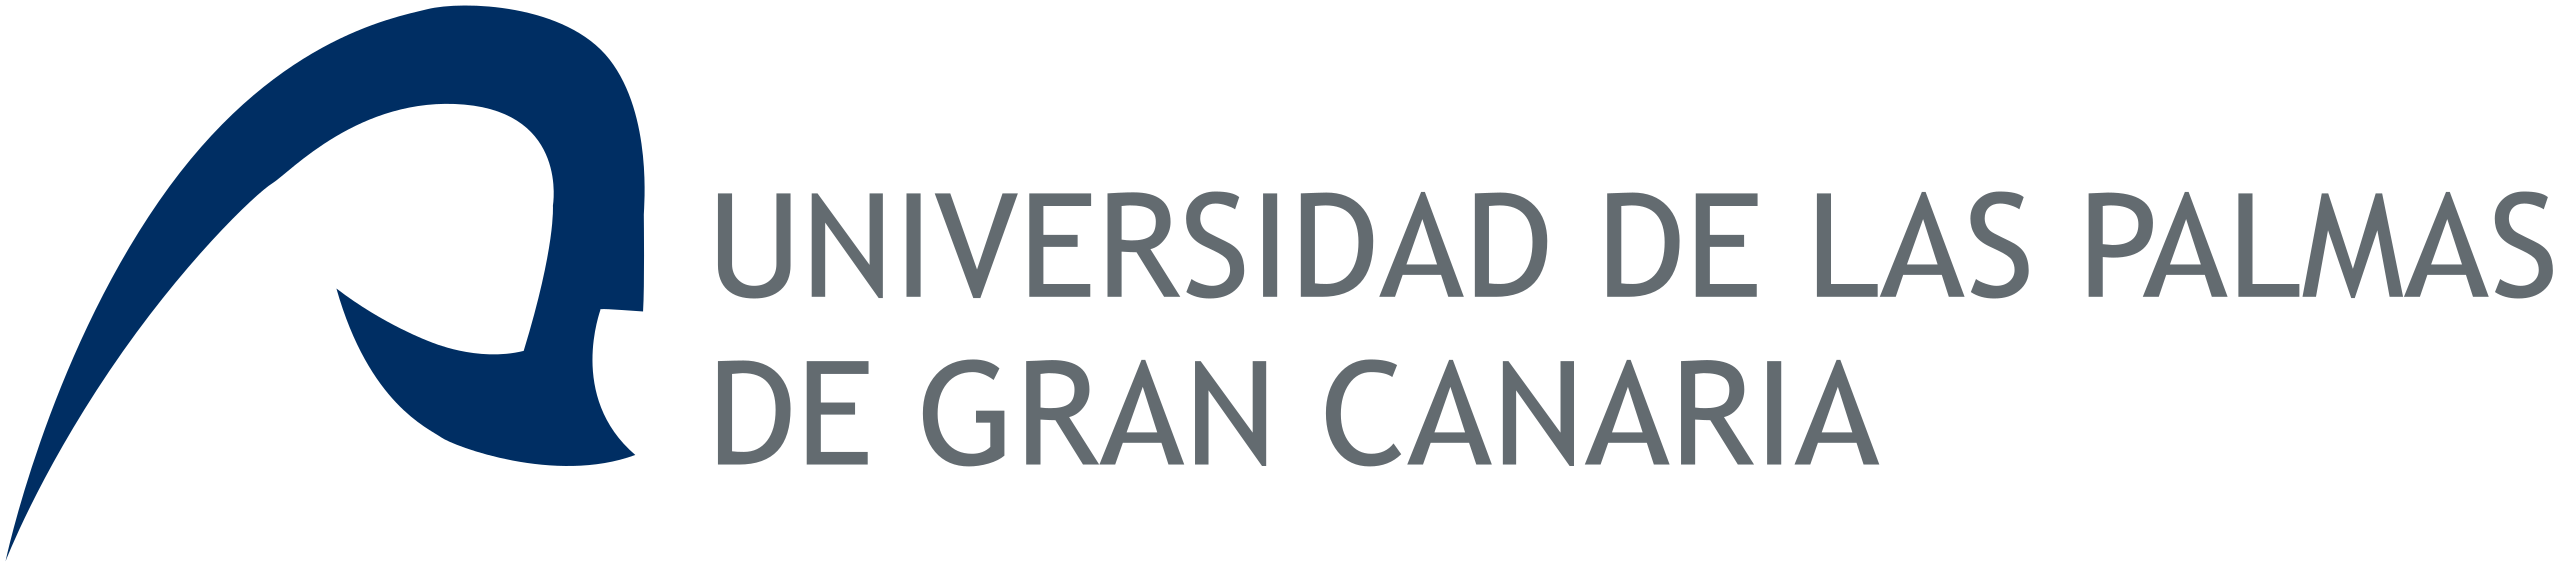 University of Las Palmas de Gran Canaria Spain